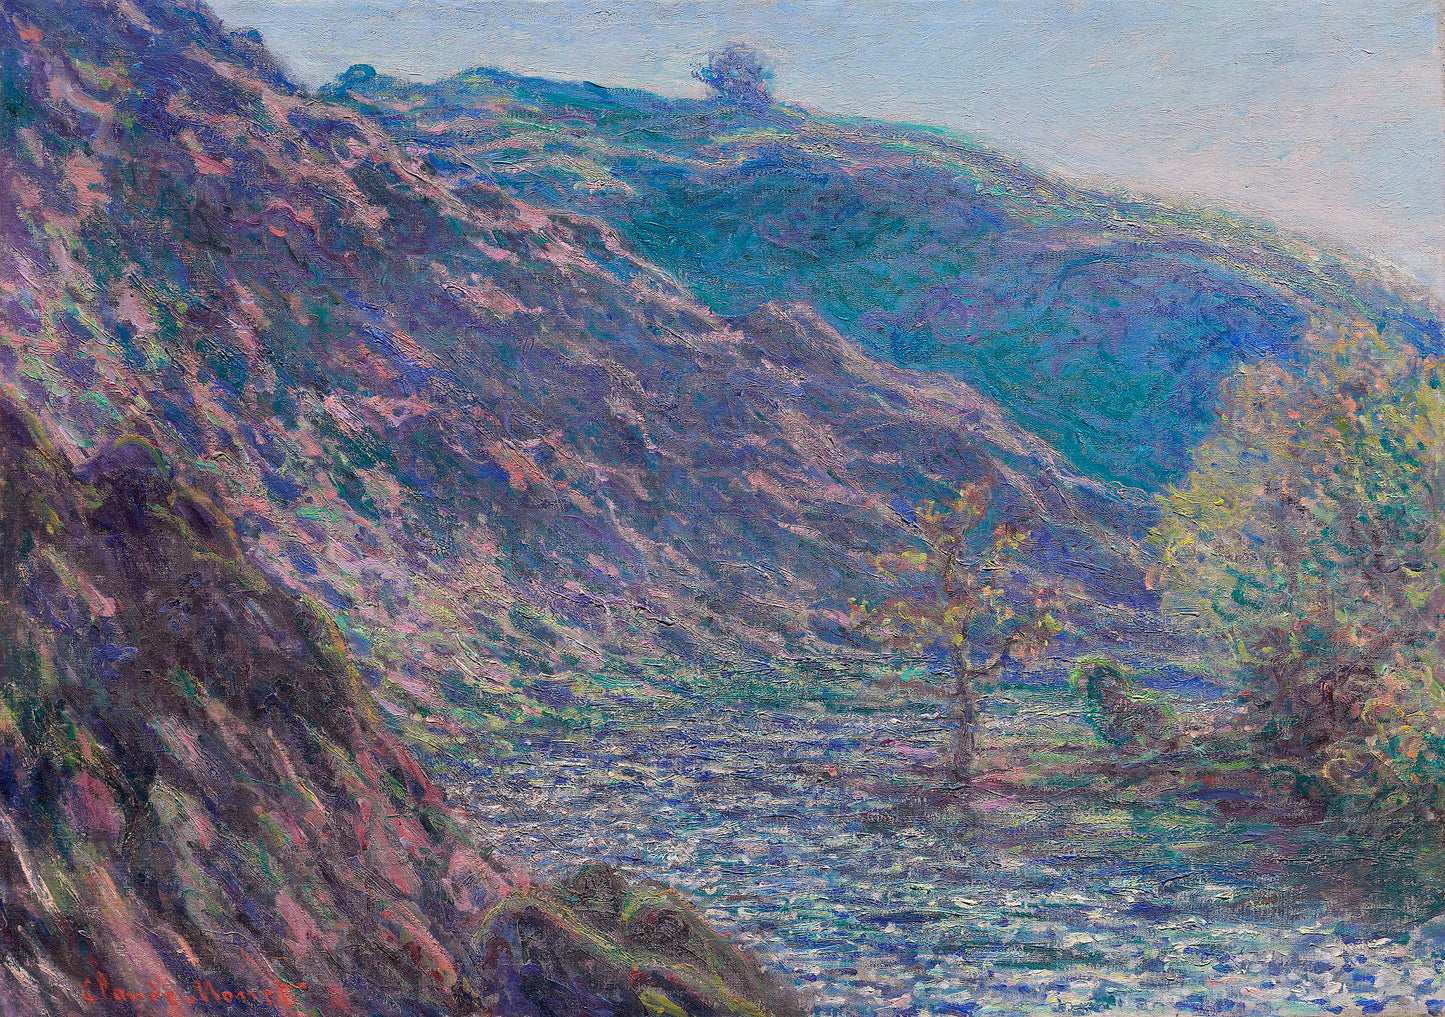 Claude Monet - The Petite Creuse River 1889 - Digital Art - JPG File Download